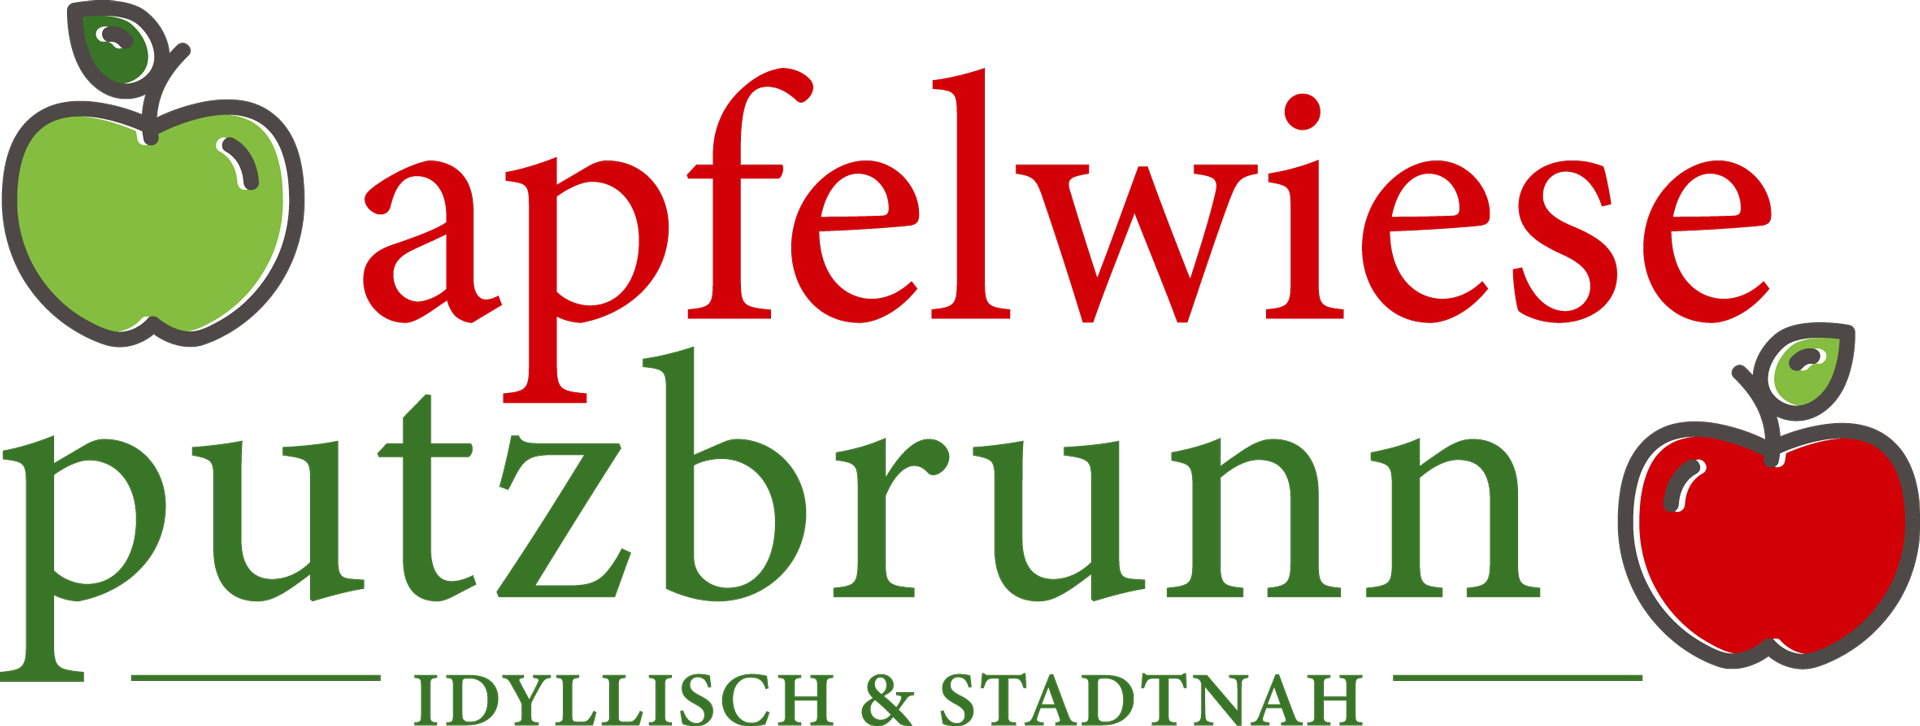 Apfelwiese Putzbrunn - Eigentumswohnungen und Haus-im-Haus-Varianten in Putzbrunn